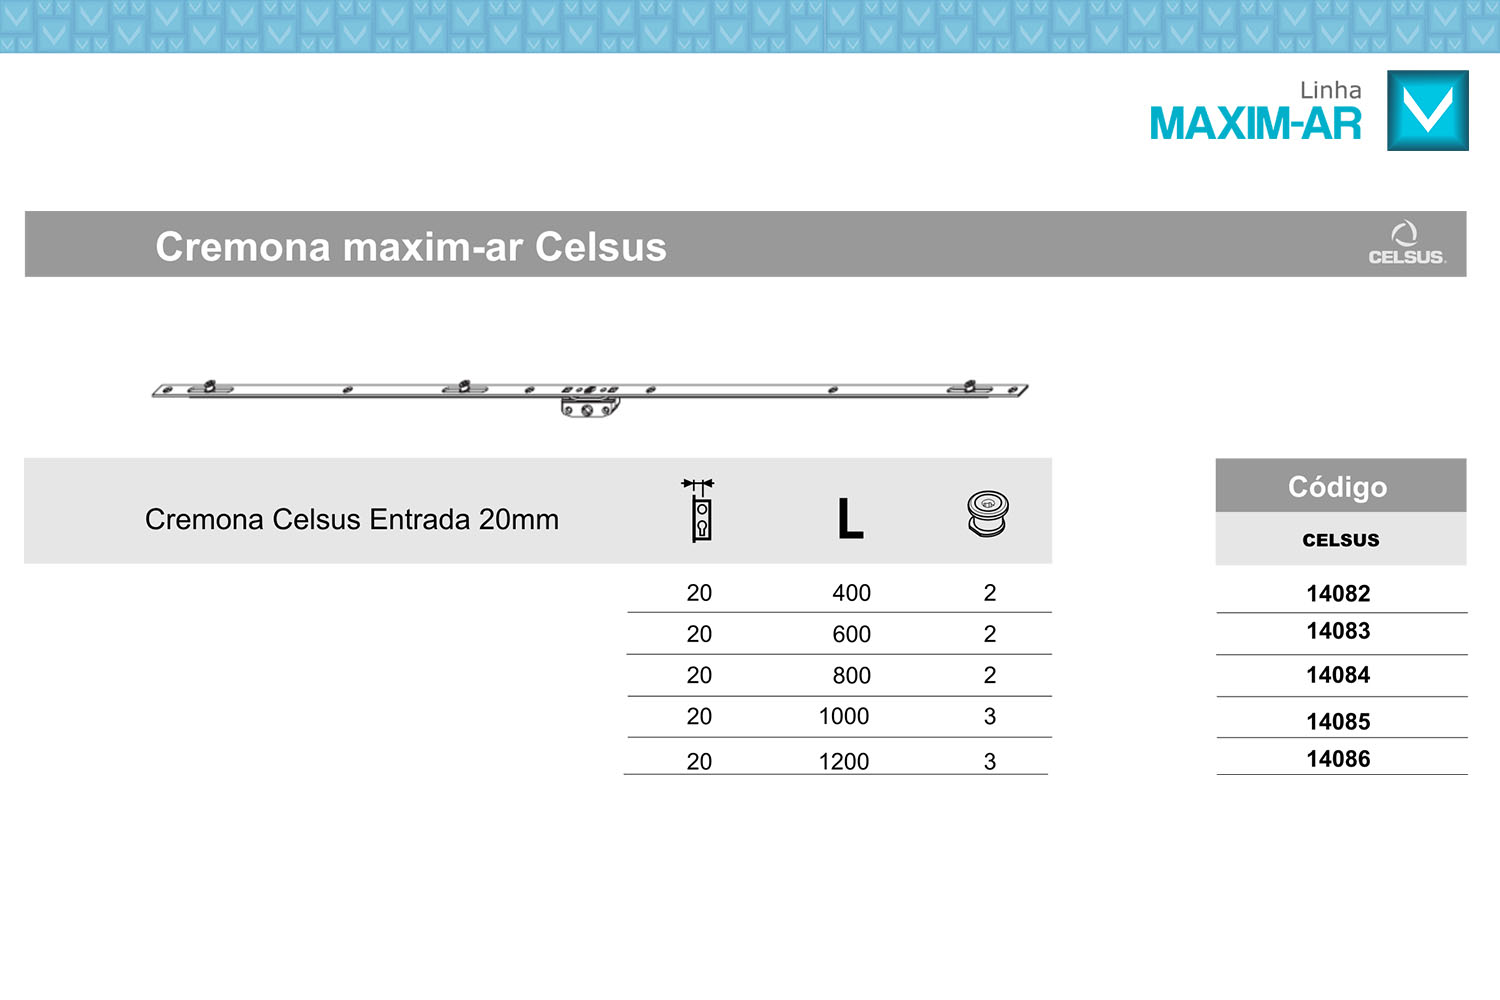 Tabela de códigos cremona Celsus E20mm